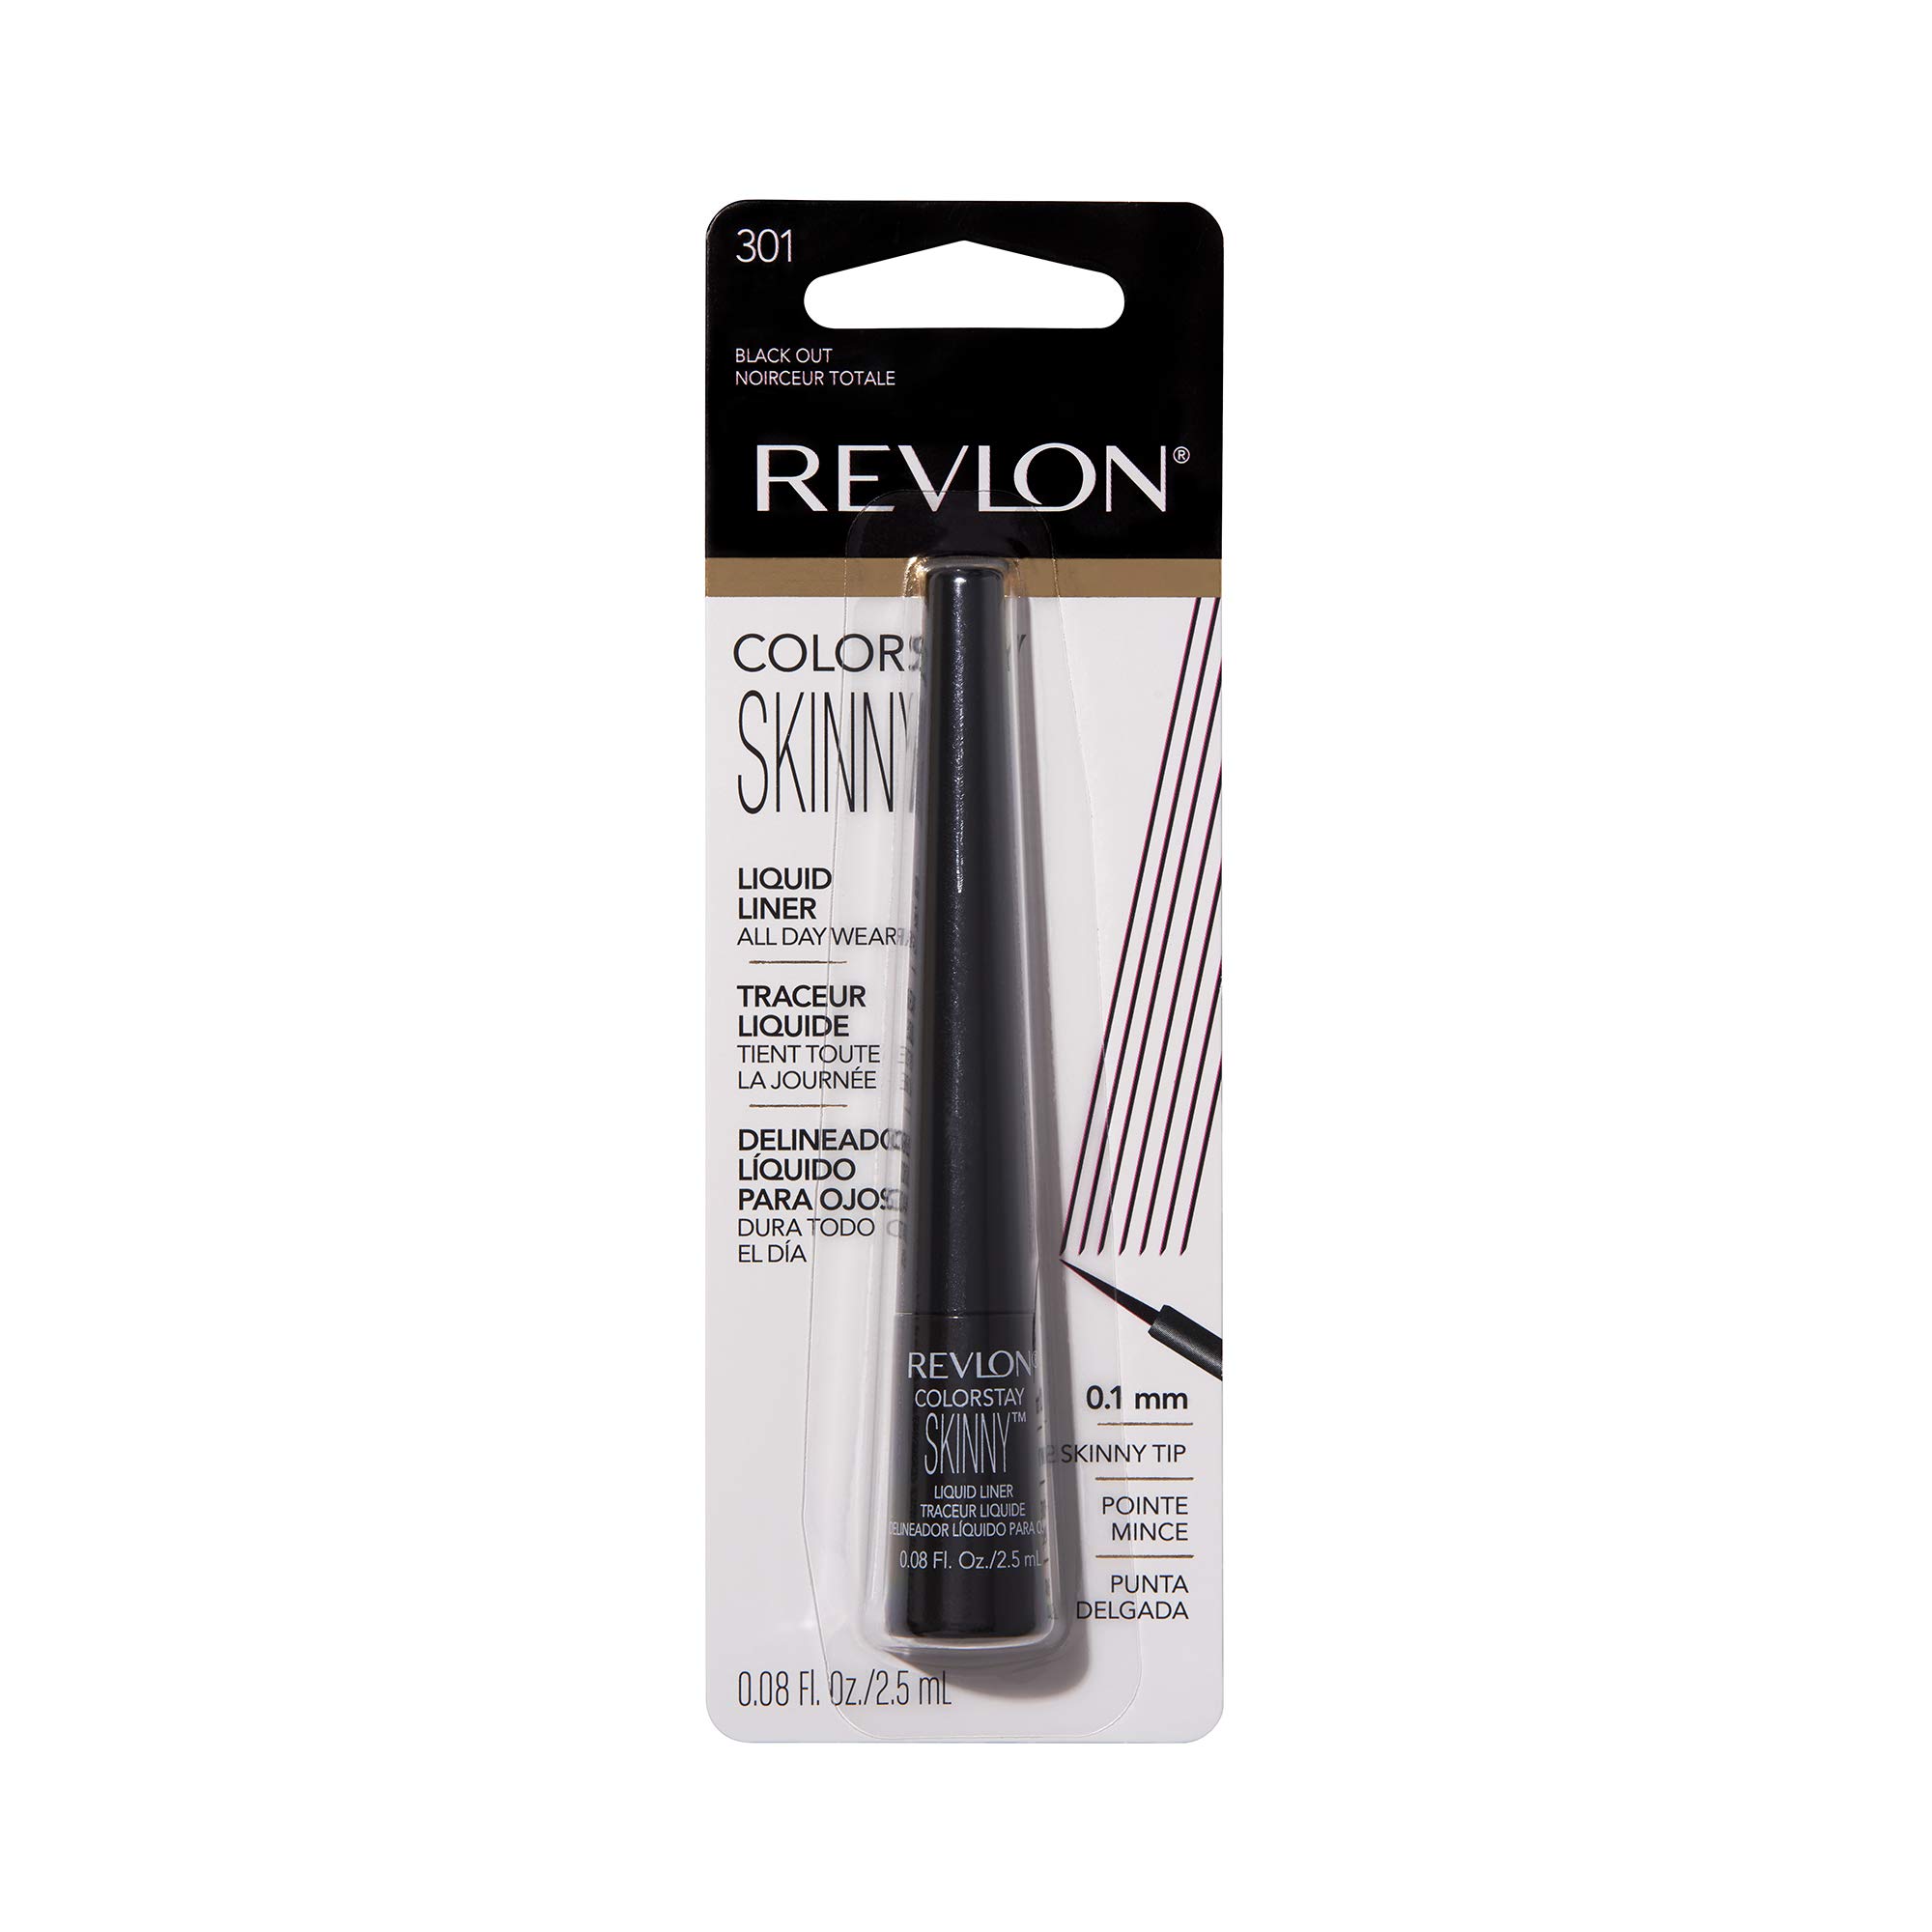 Revlon Skinny Liquid Eyeliner, ColorStay Eye Makeup, Waterproof, Smudgeproof, Longwearing with Ultra-Fine Tip, 301 Black Out, 0.08 Fl Oz (Pack of 1)